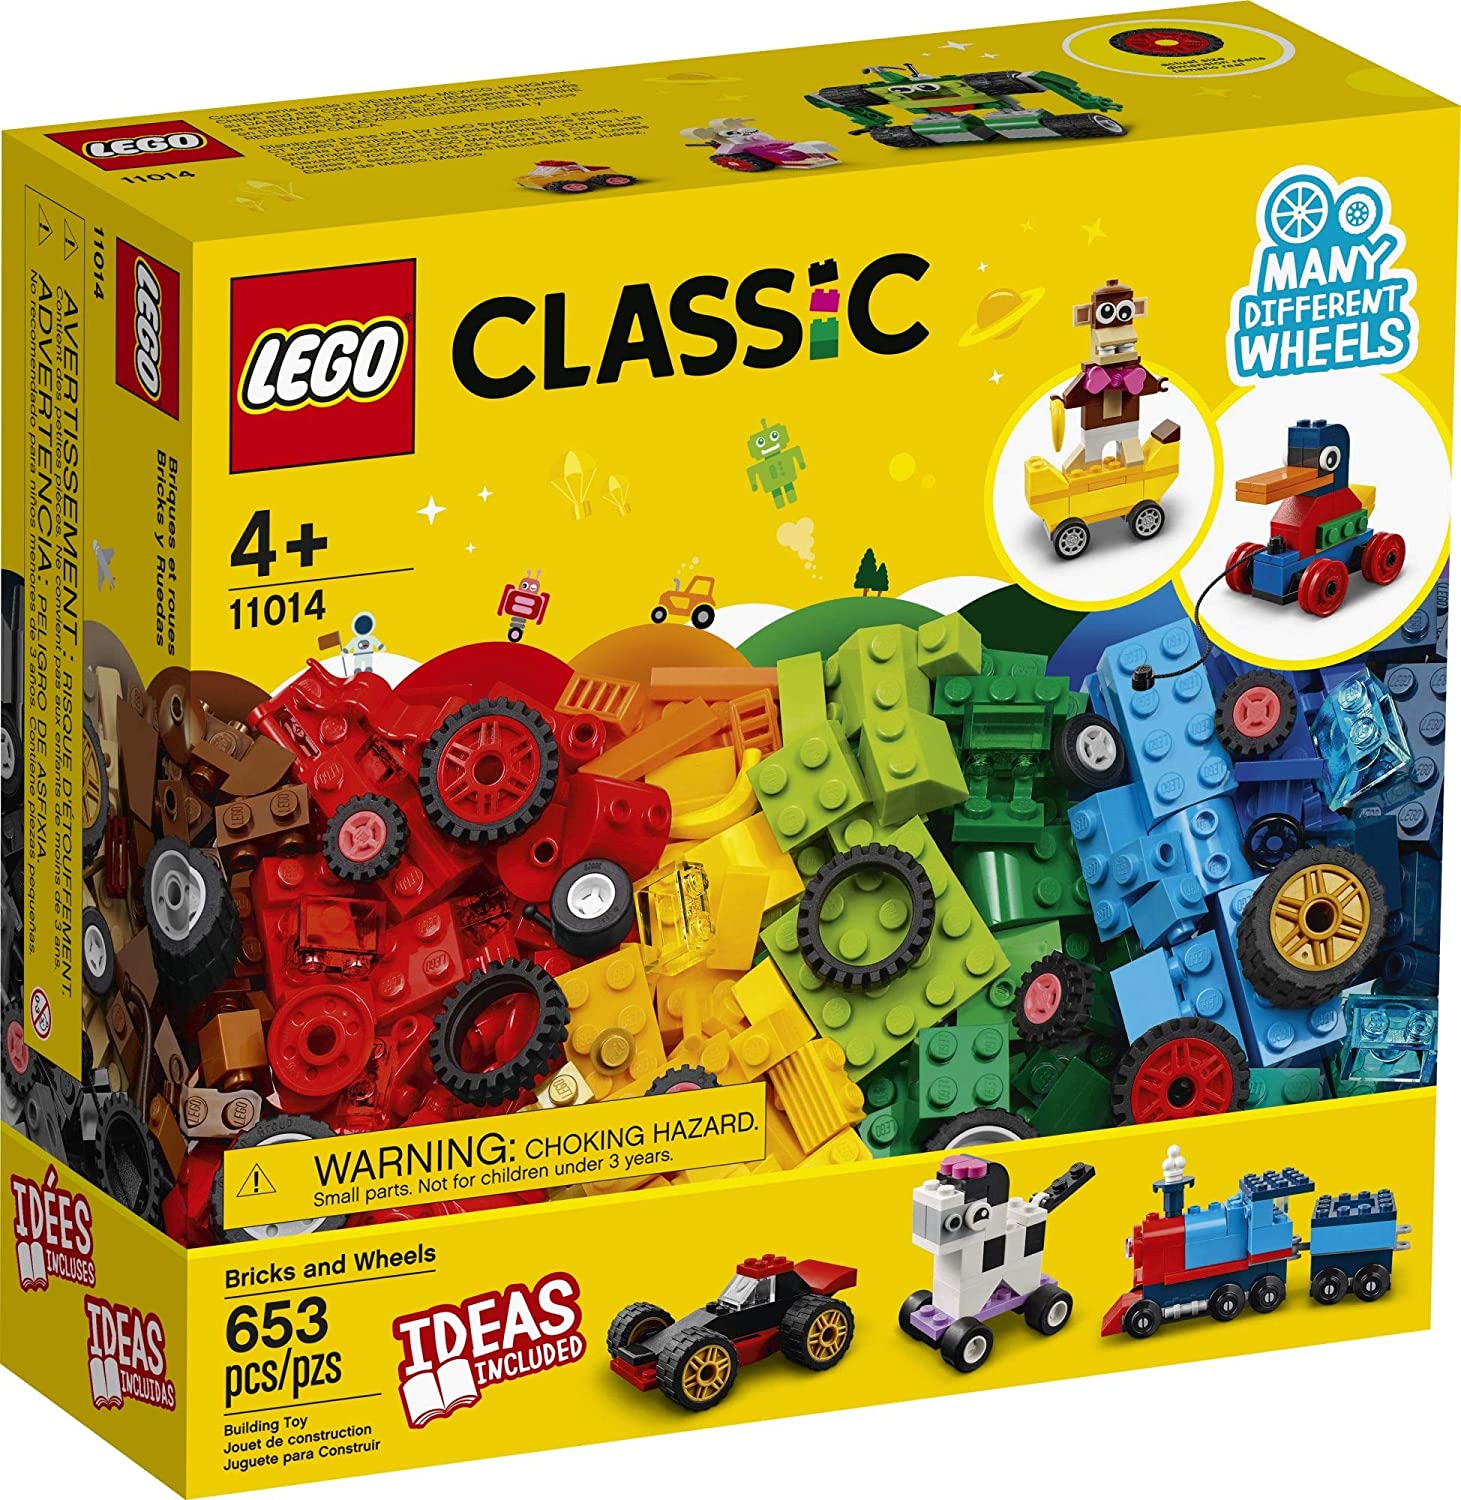 Kit de construcción LEGO clásico  2021 (653 piezas)